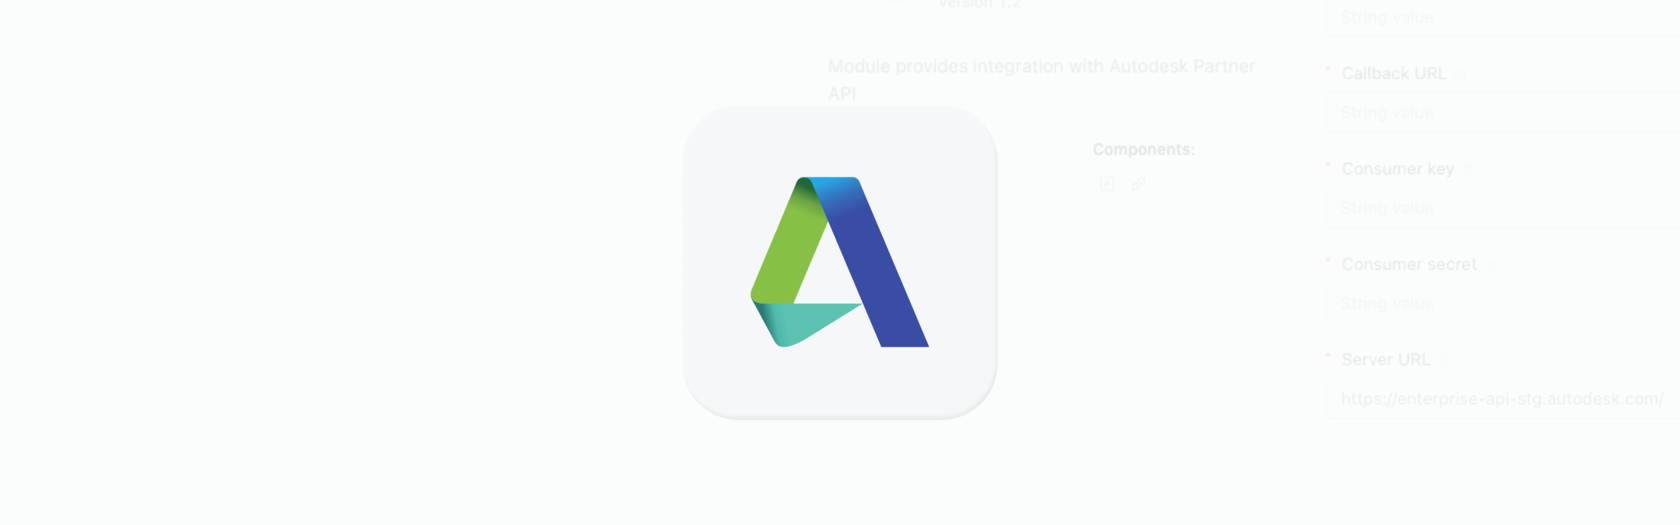 Autodesk 파트너 API